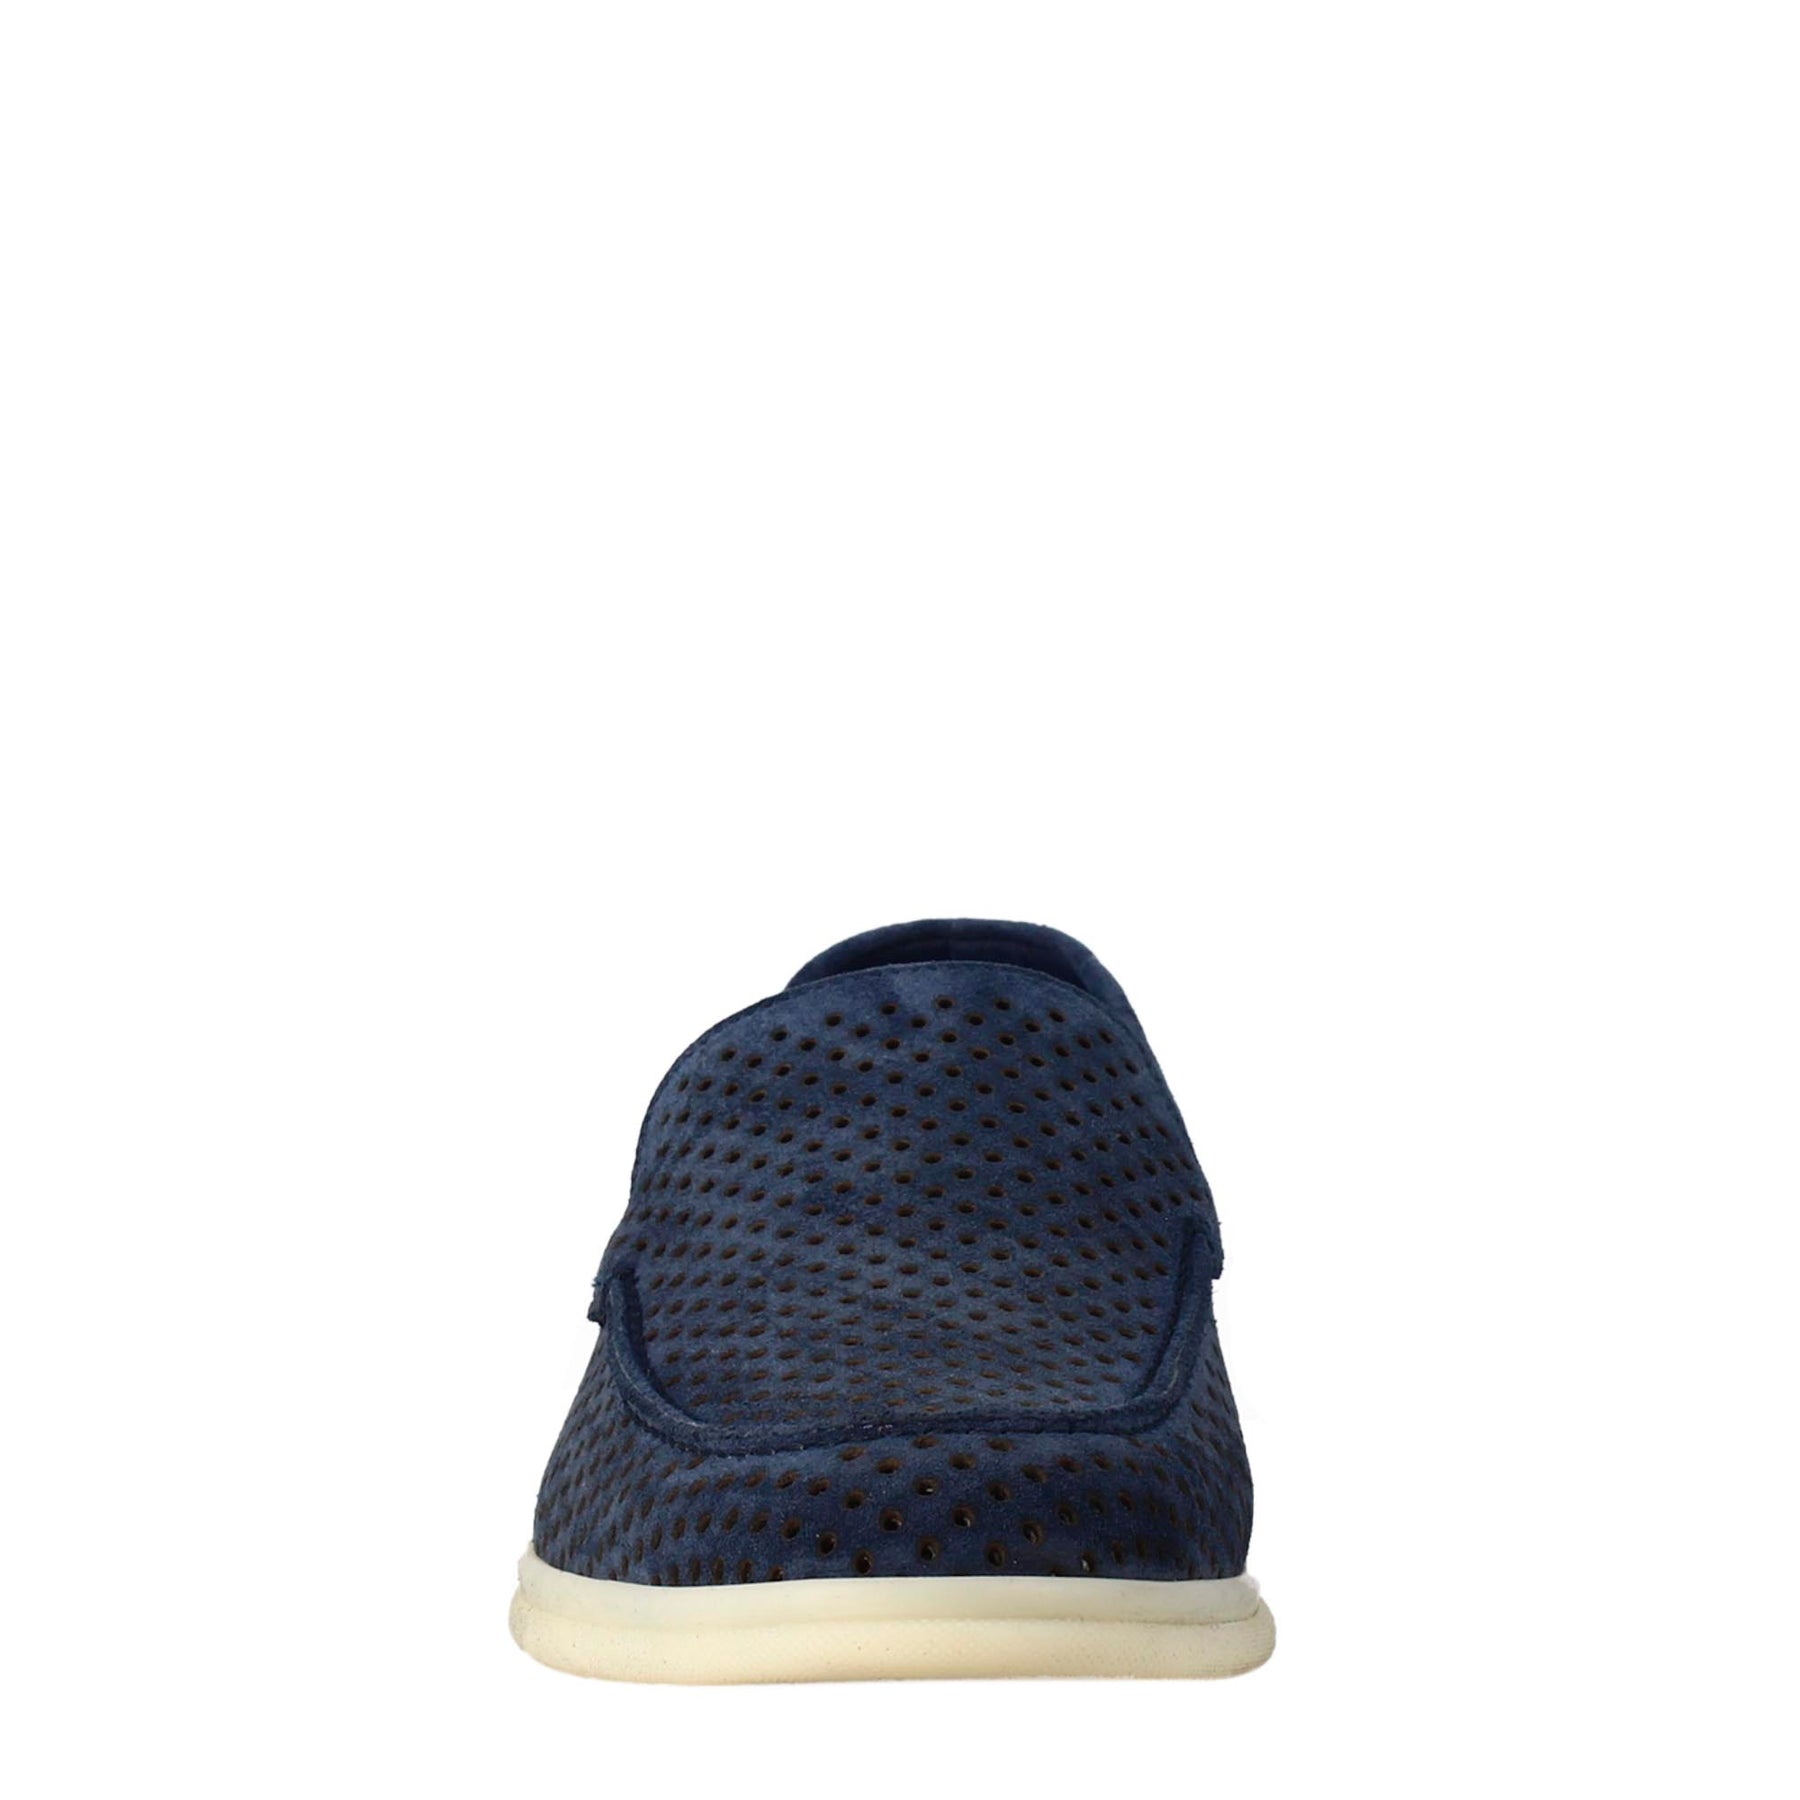 Elegant dark blue unlined loafer for men in suede